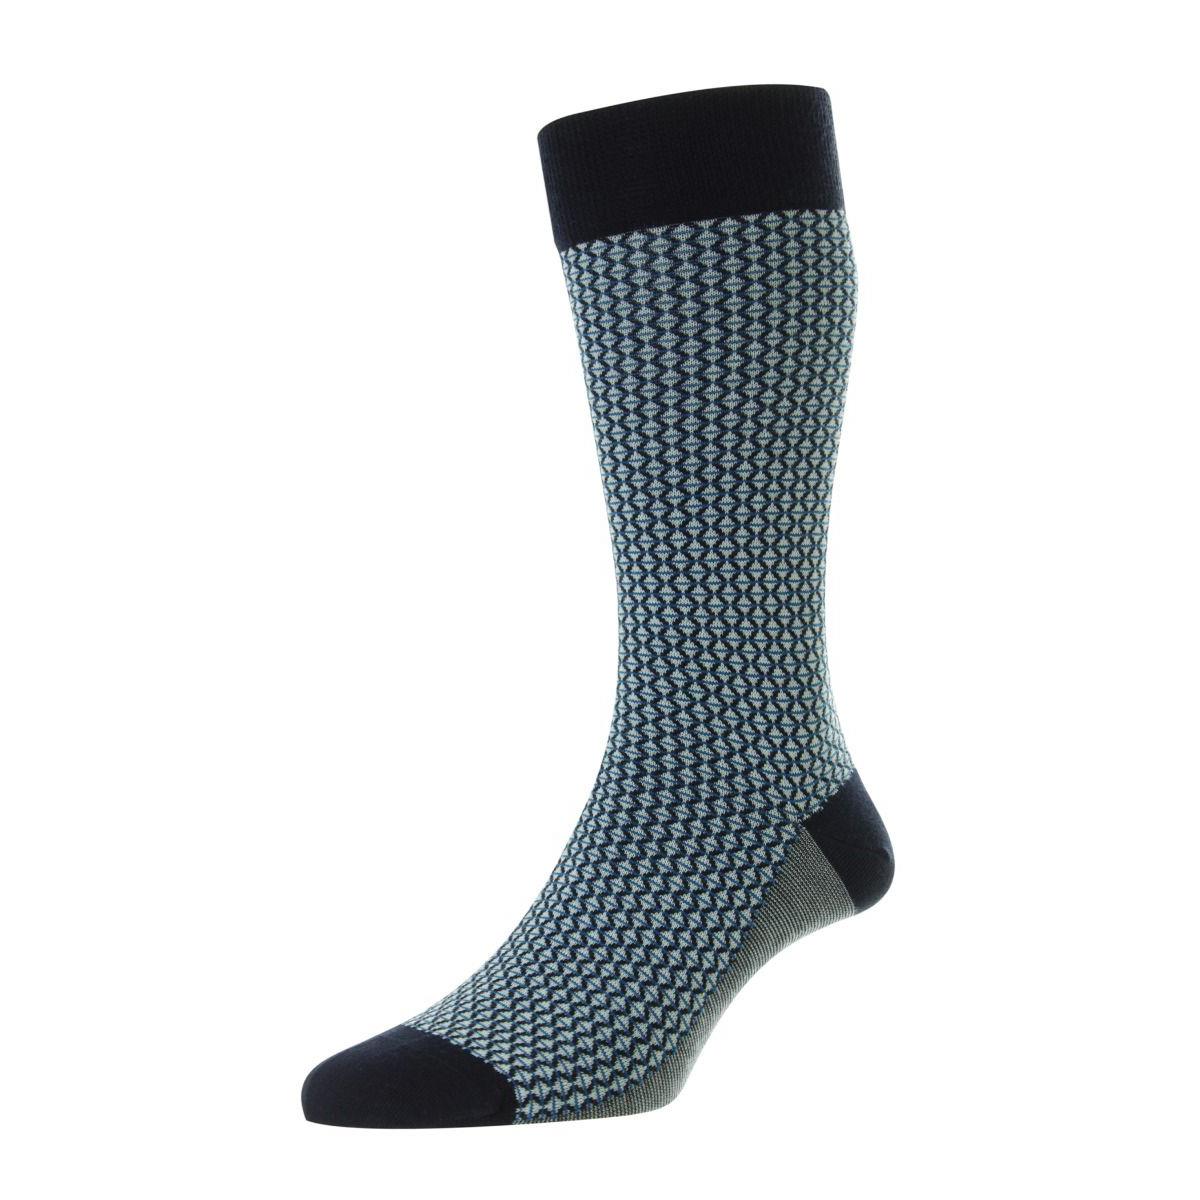 Elgar Comfort Top Socks - Men's